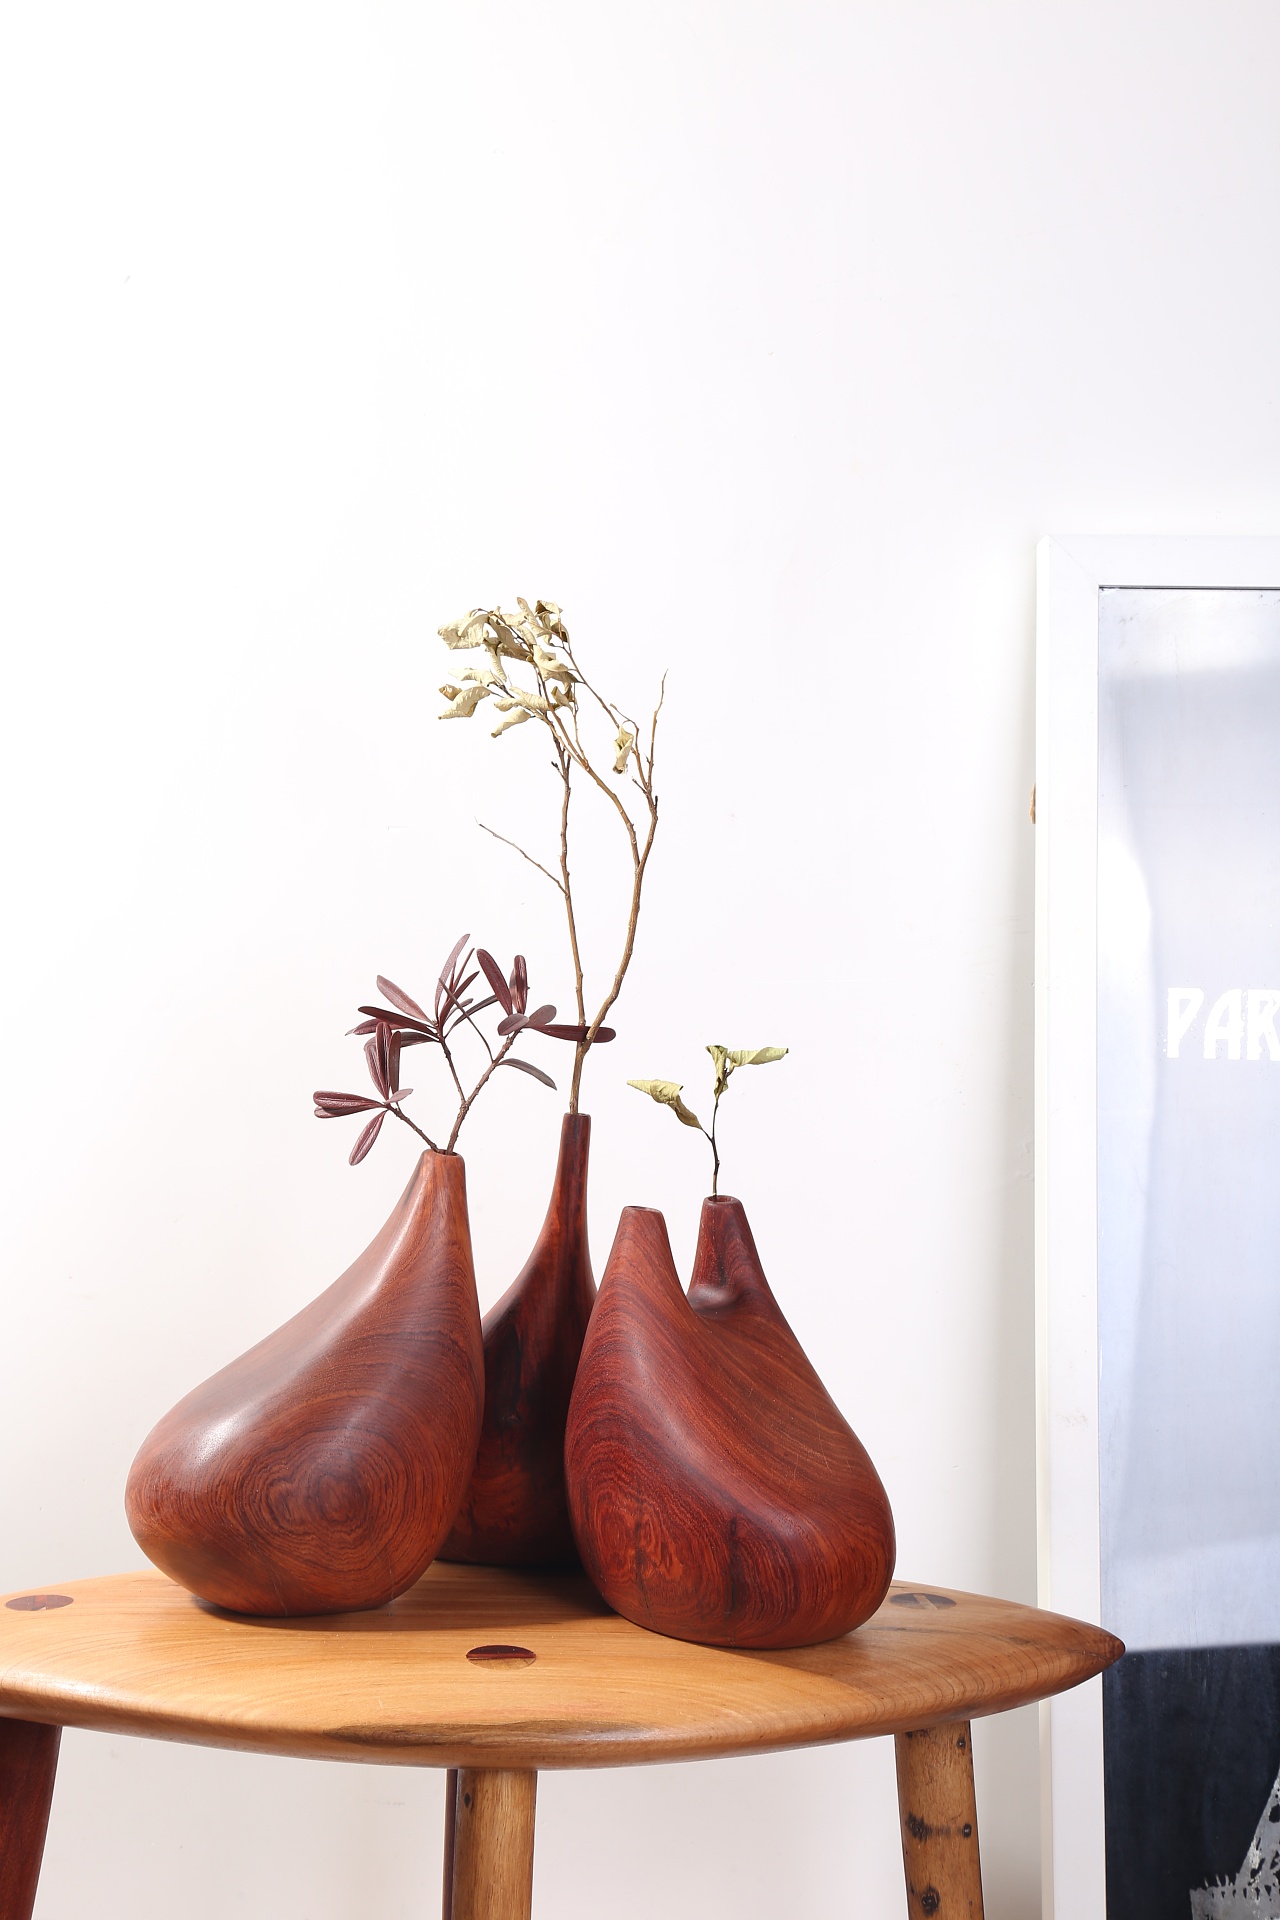 仿生艺术花瓶摆件(缅甸花梨木)|手工艺|工艺品设计